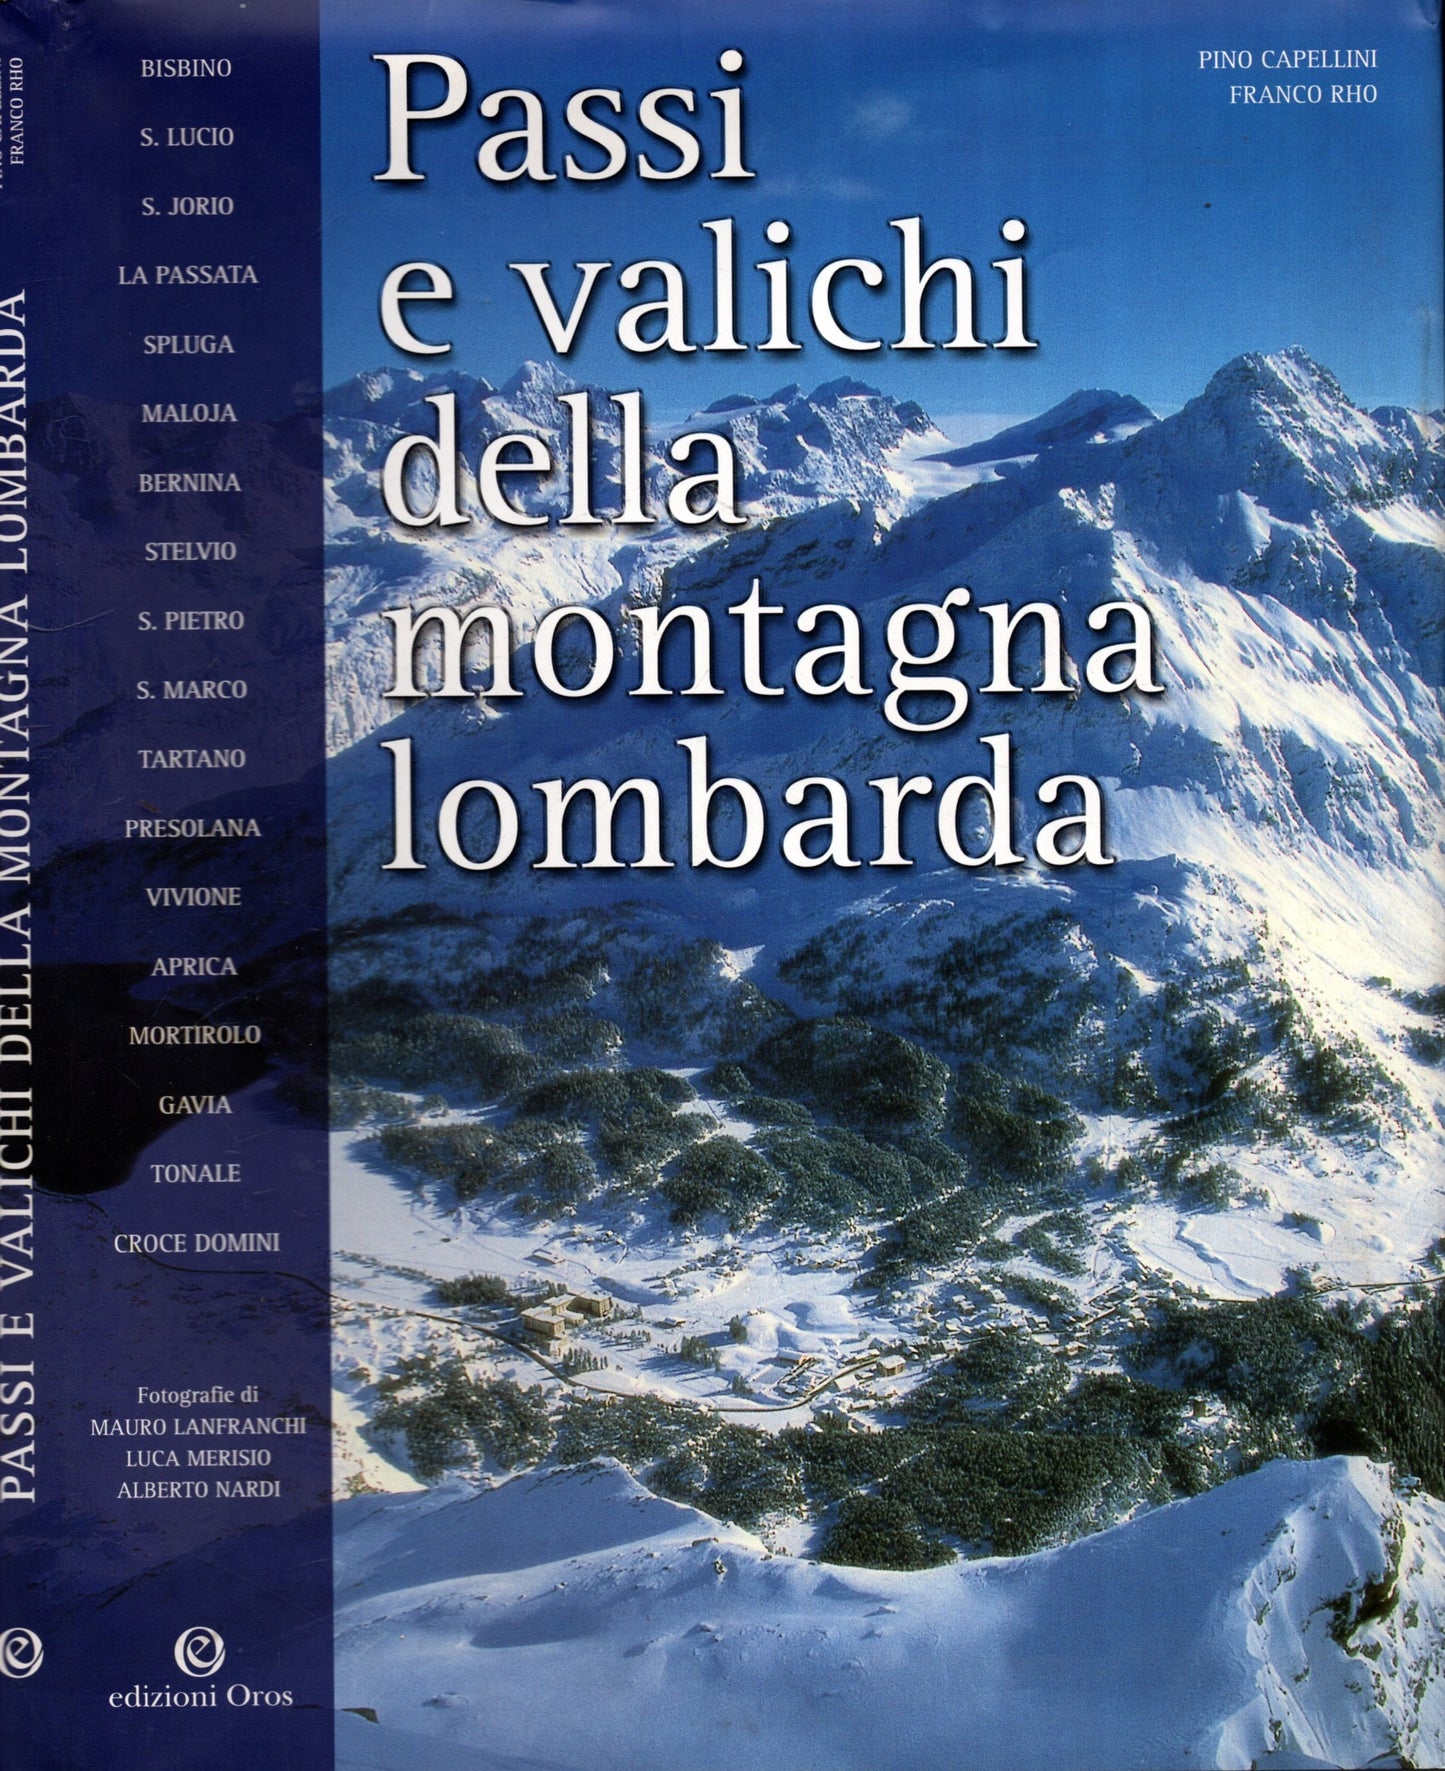 Passi E Valichi Della Montagna Lombarda - Pino Capellini E Franco Rho *